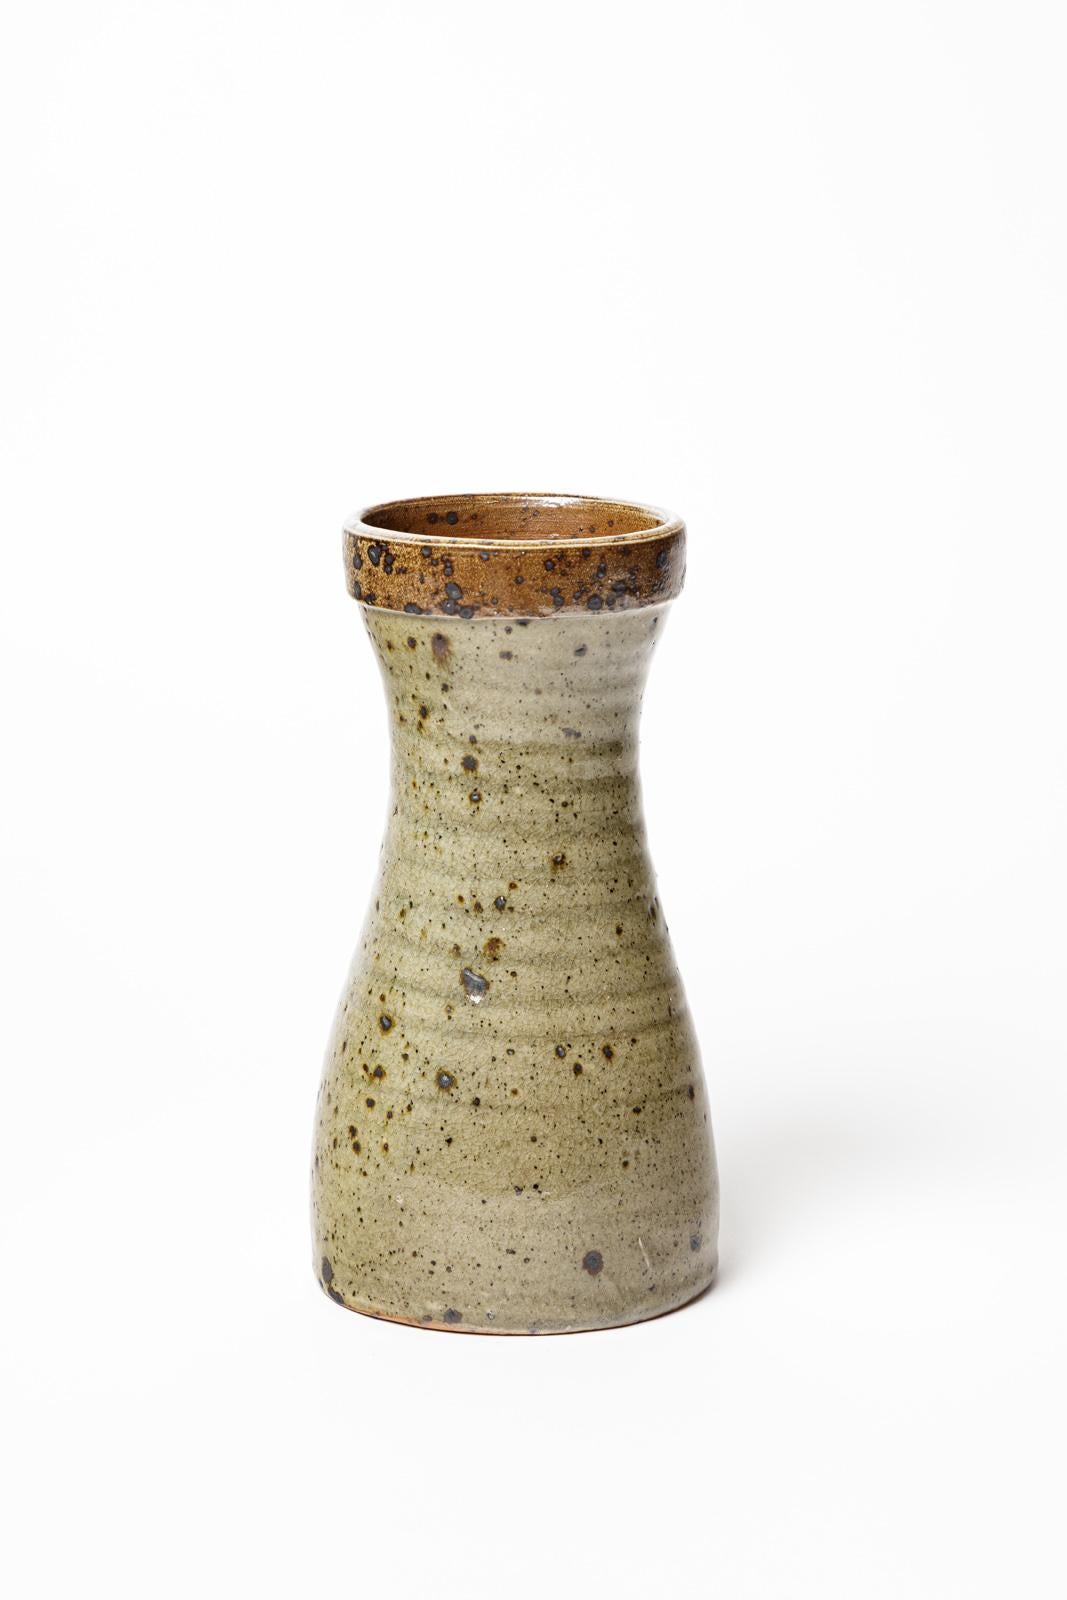 Gustave Tiffoche

Réalisé vers 1970

Diabolo Vase en céramique du XXème siècle par Gustave Tiffoche$.

Signé à la base

Condition originale parfaite.

Hauteur 23 cm
Grand 13 cm